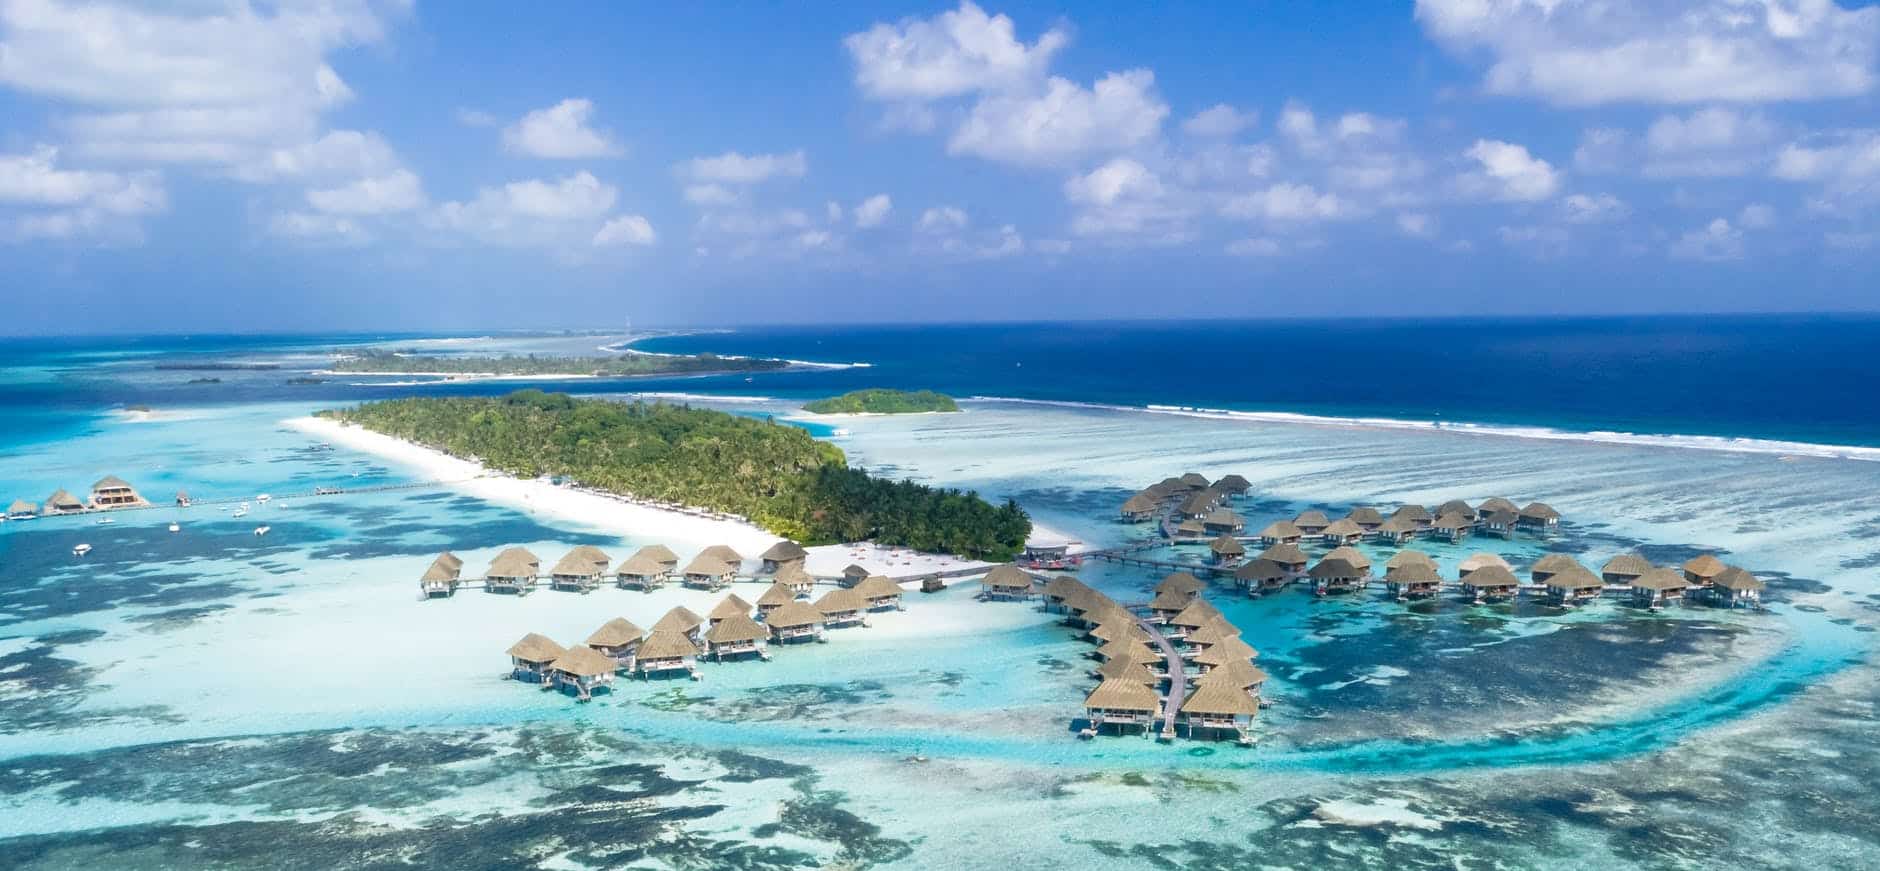 Dicas e experiências nas ilhas resort das Maldivas – uma viagem ao paraíso?